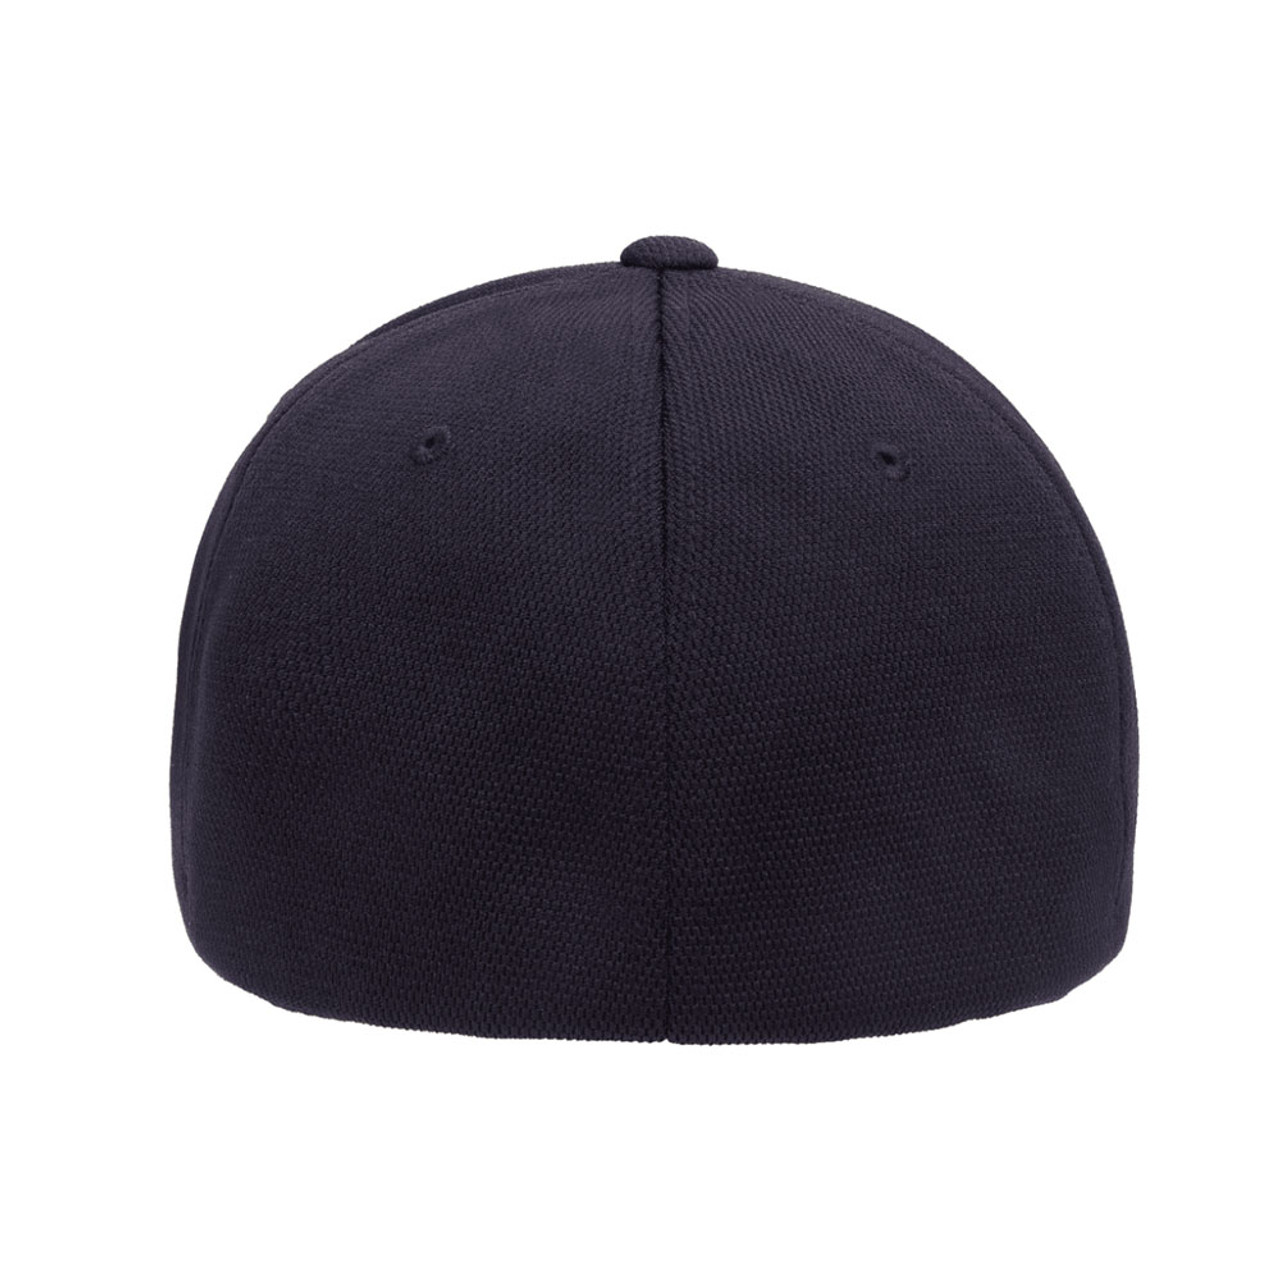 Flexfit Cool & Dry Performance Cap - One Dozen | The Jac Hat